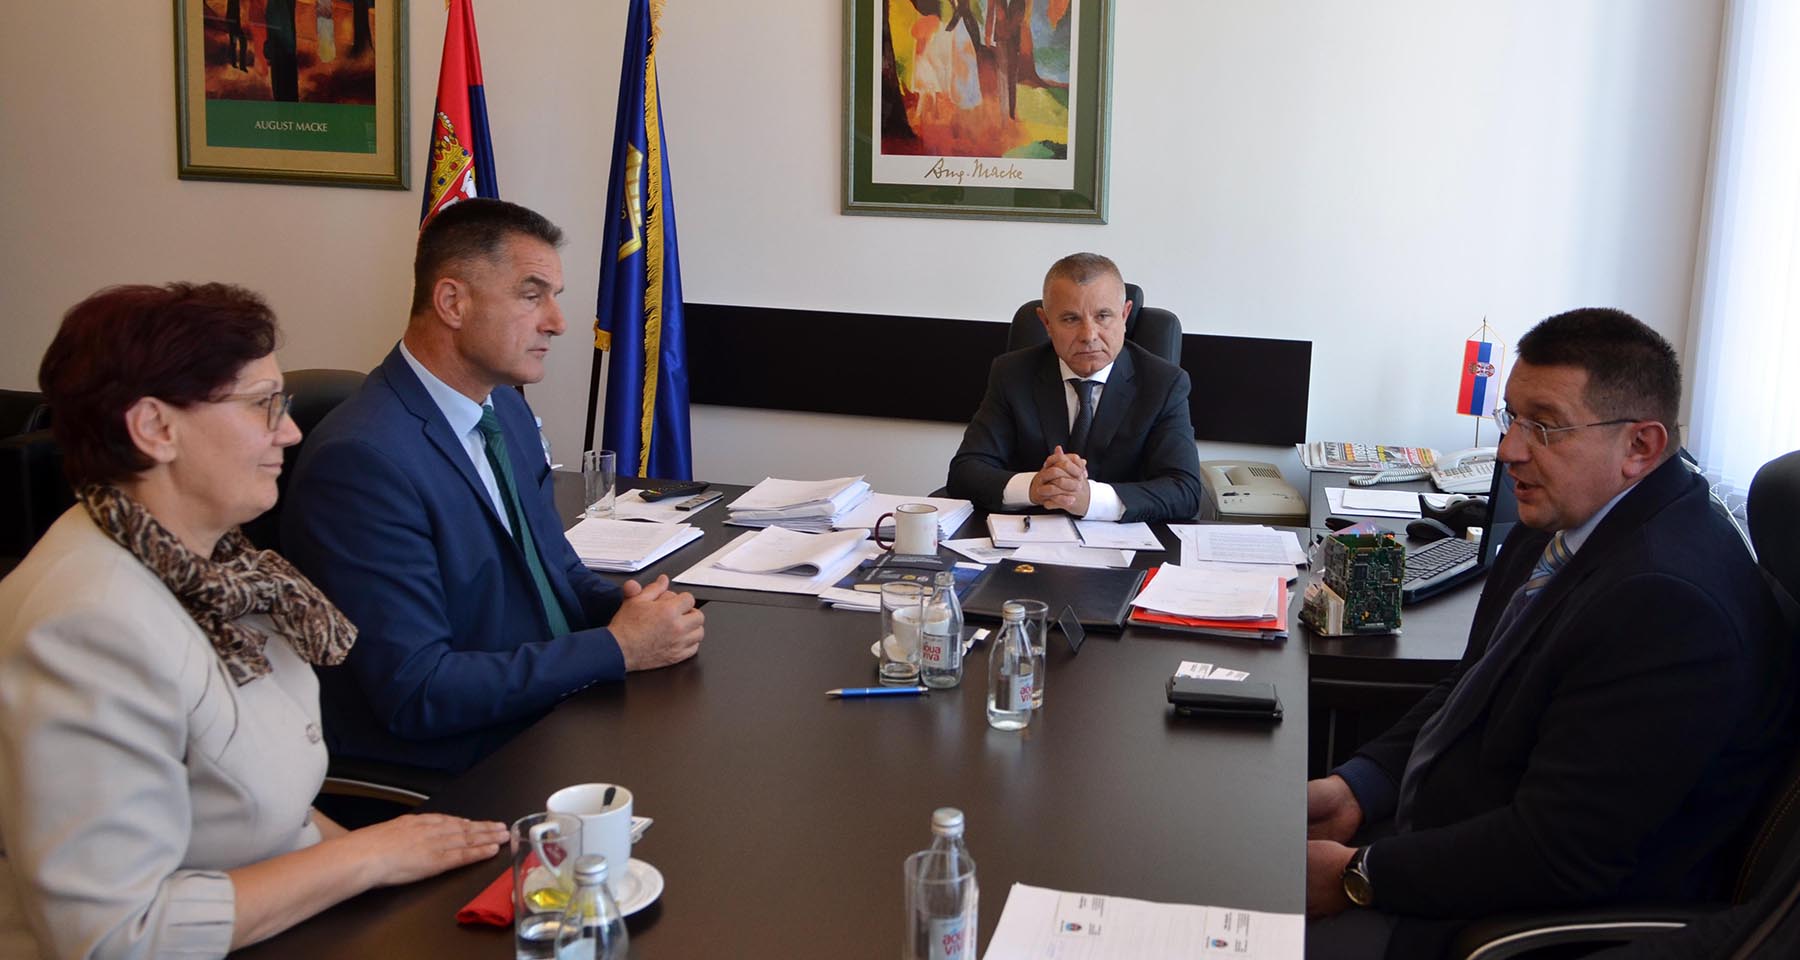 Миличковић и Марић разговарали са представницима Града Новог Пазара